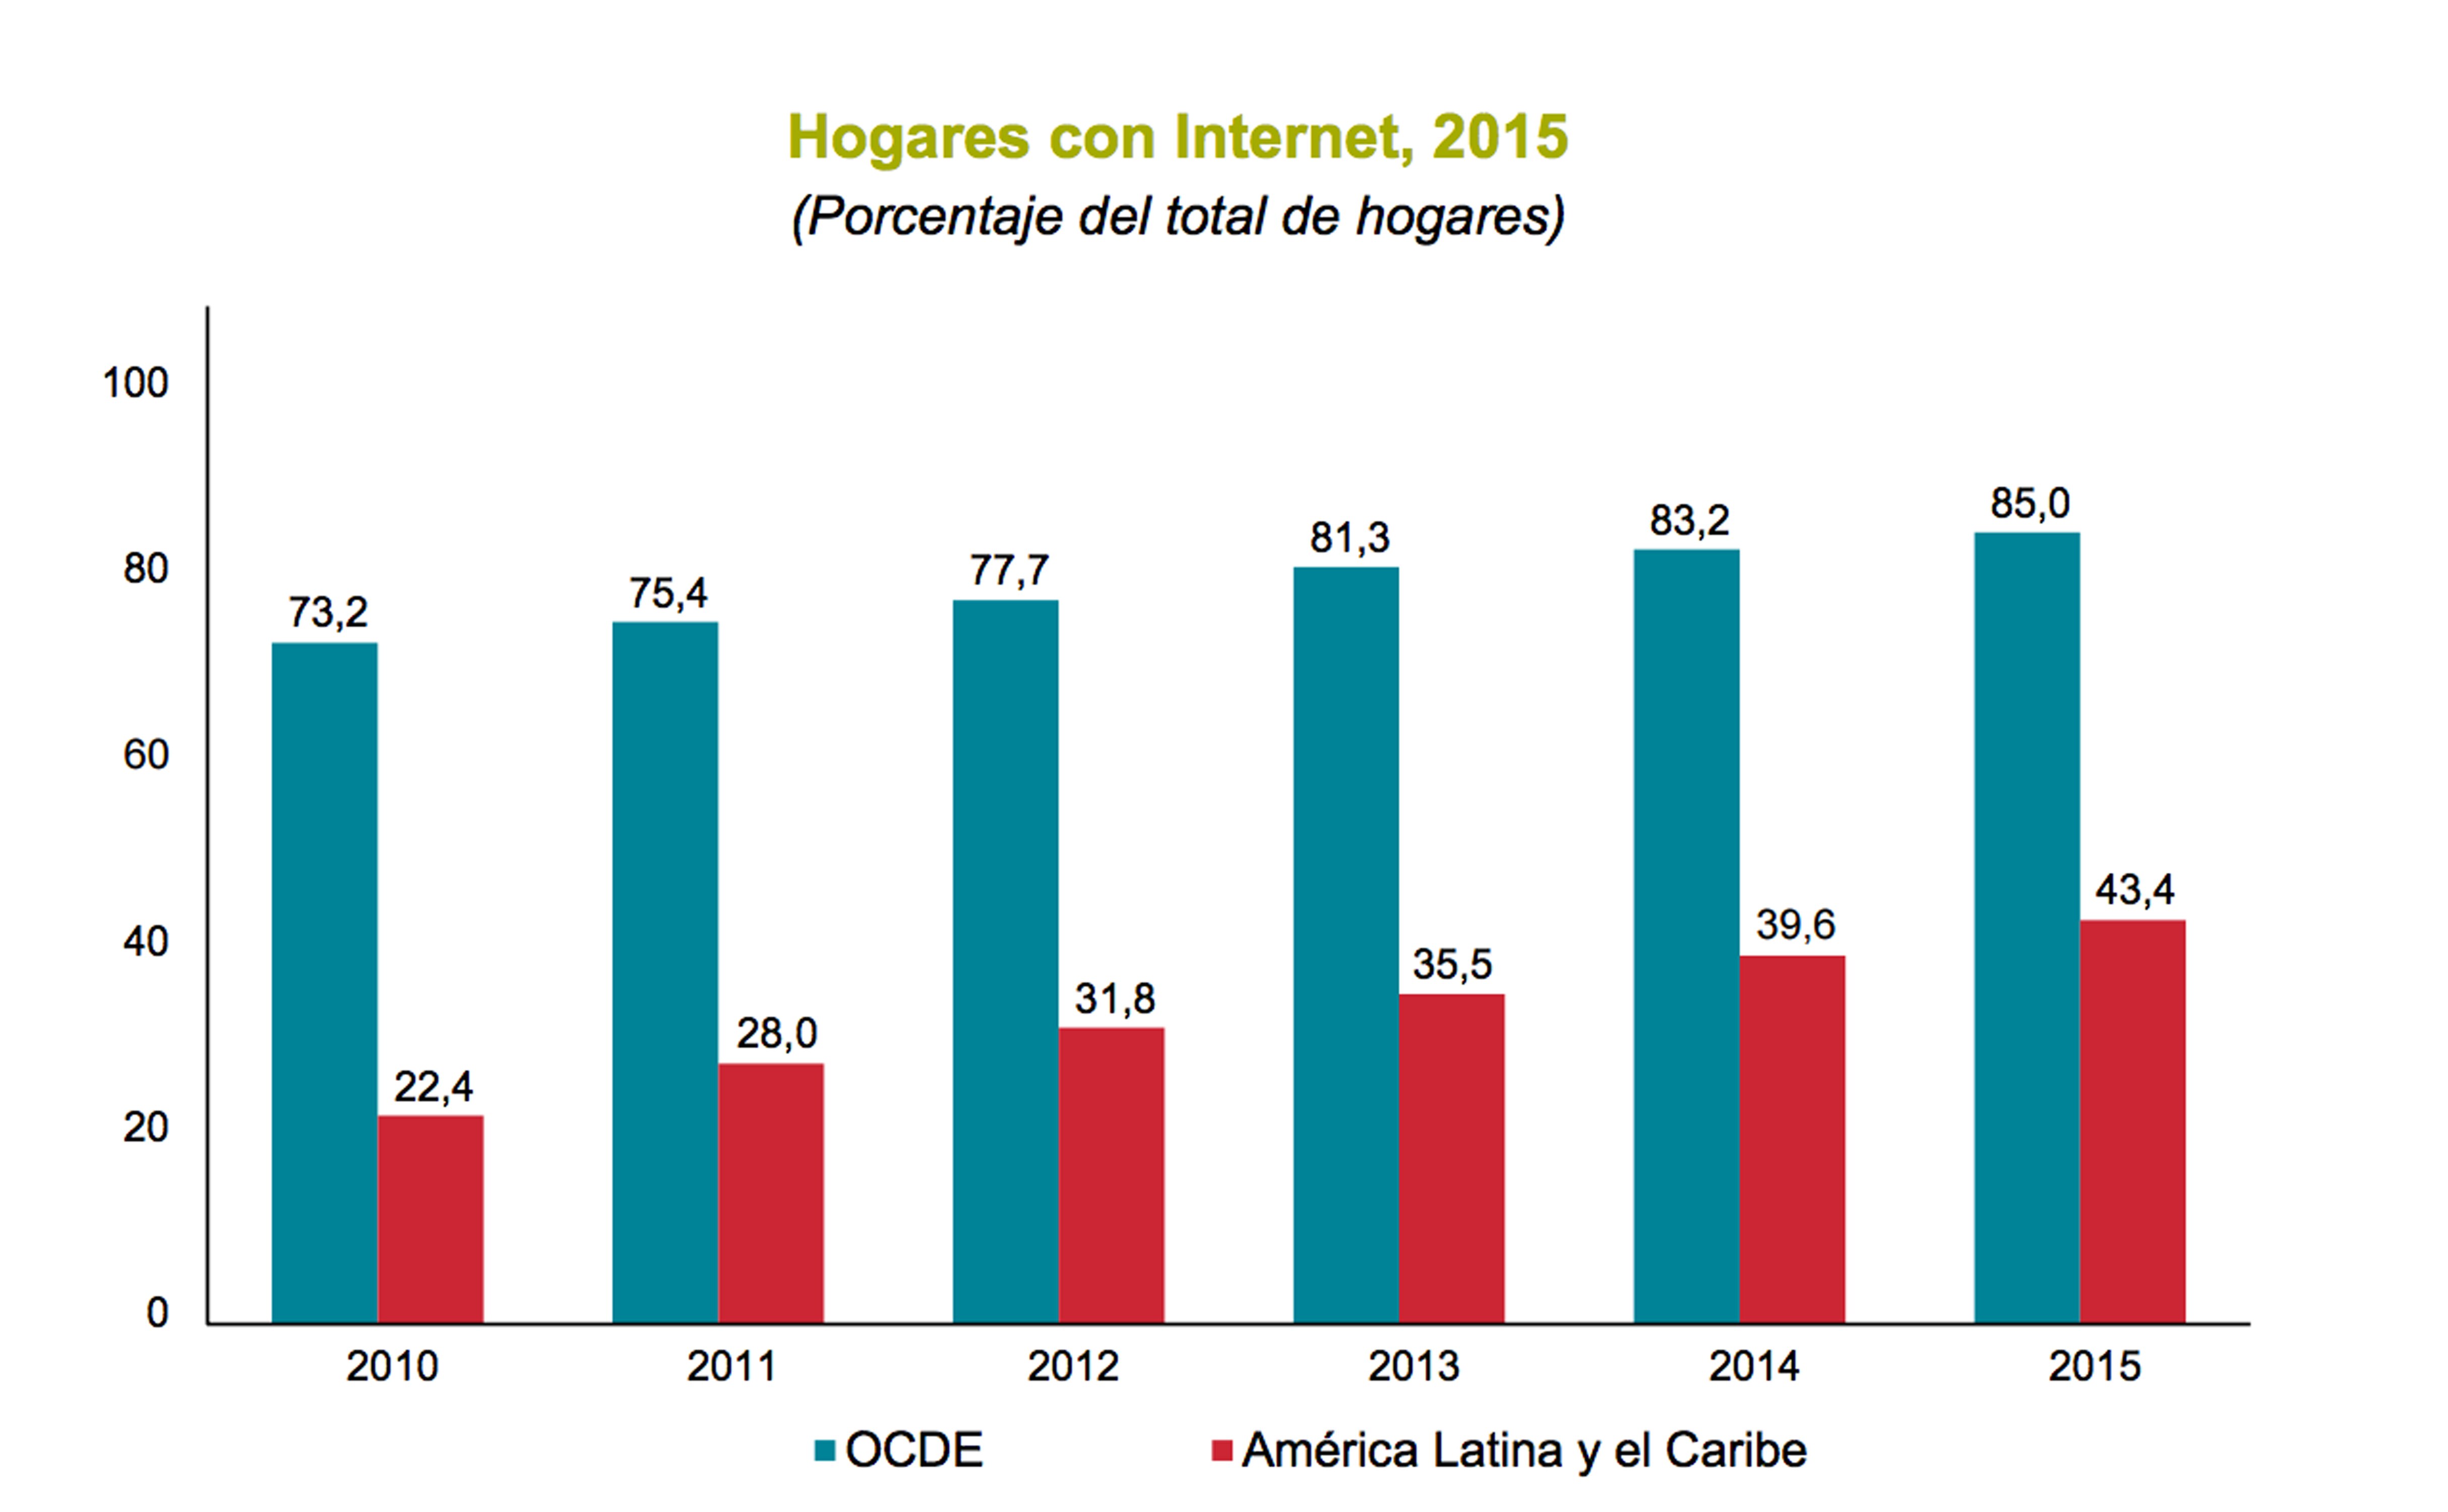 Hogares con Internet en América Latina